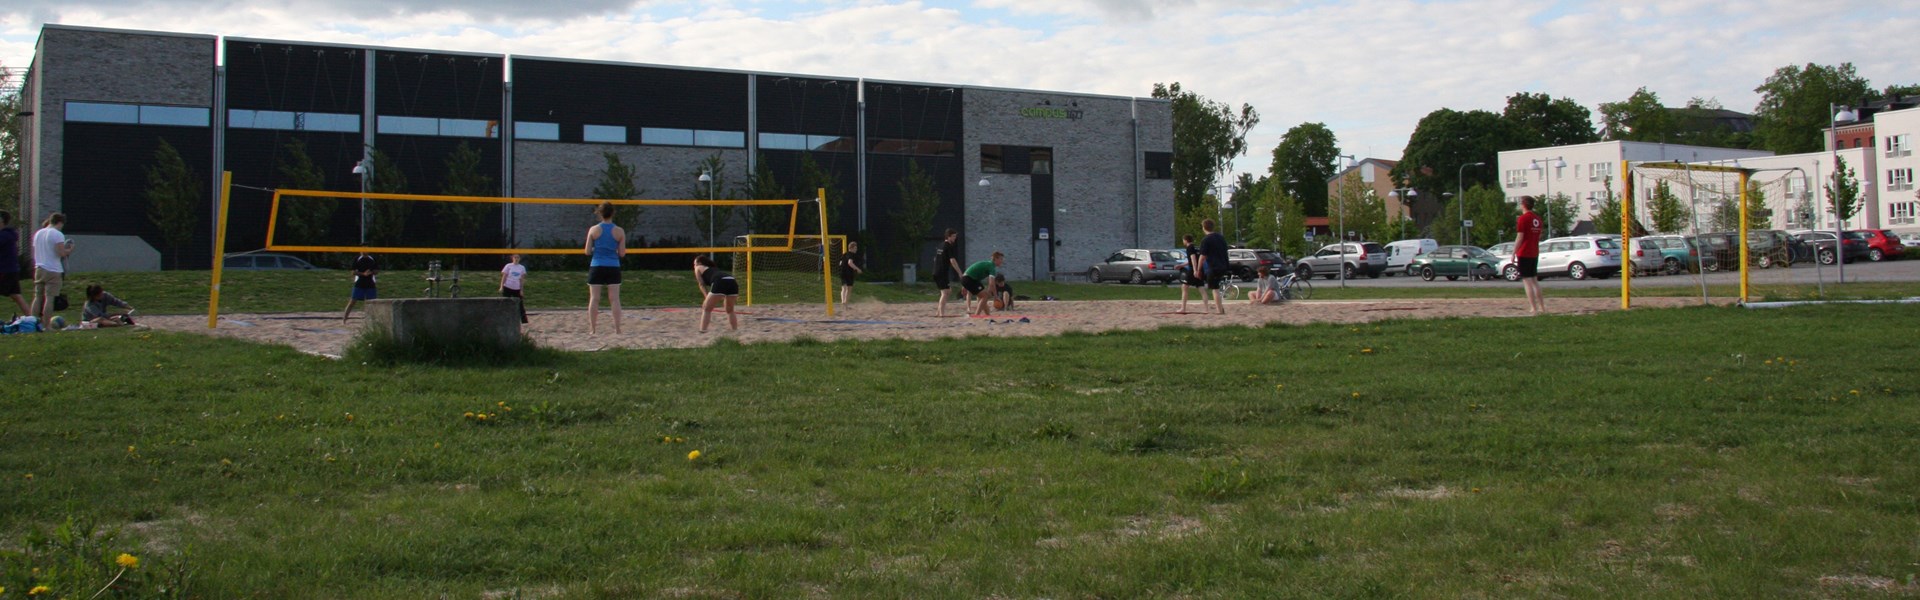 Volleyboll är en av många aktiviteter vid Campus1477